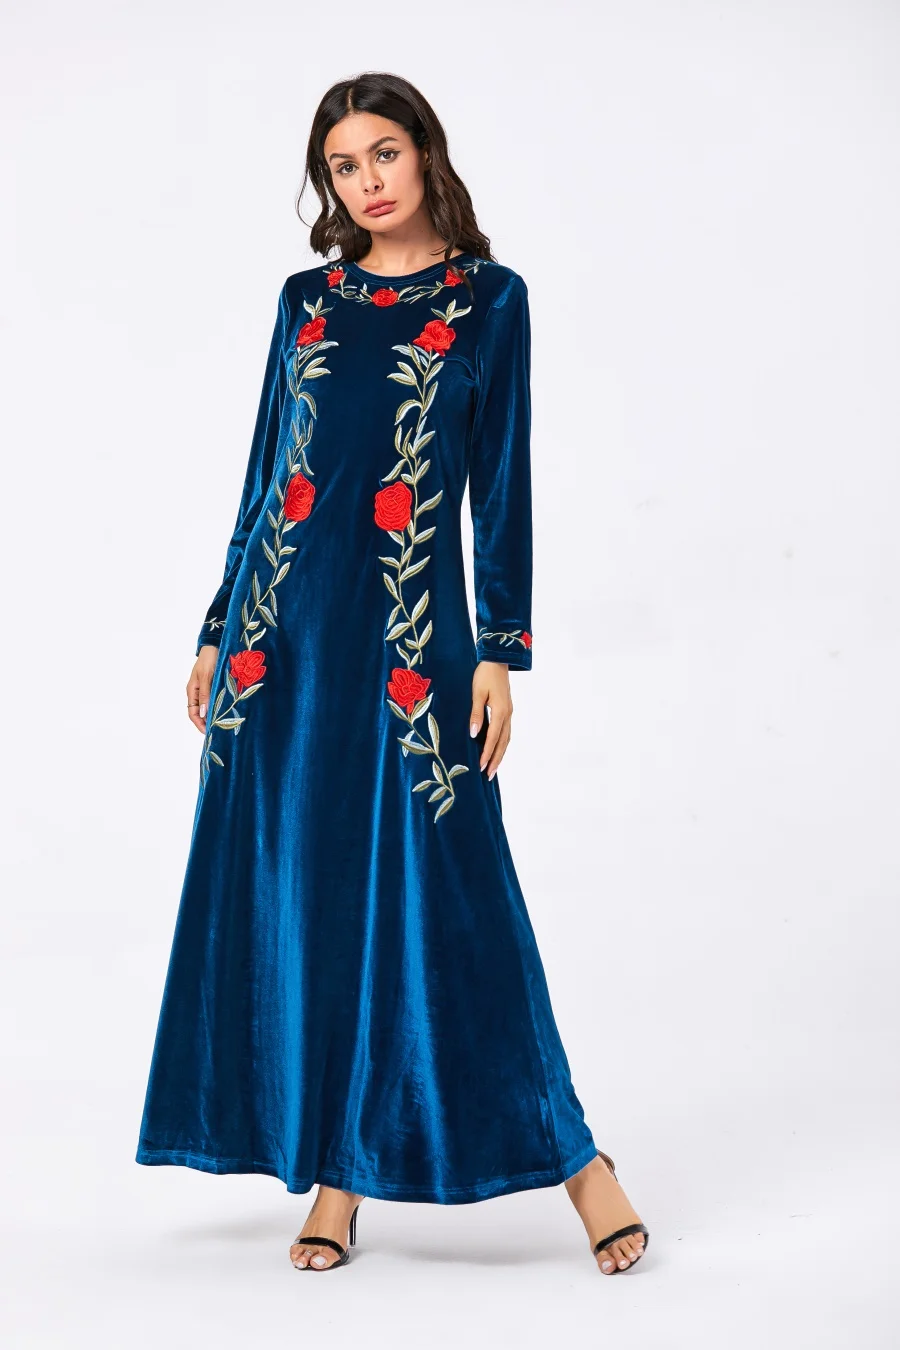 Мусульманское женское платье Абая кафтан бархат вышитые Макси длинное платье элегантный круглый вырез с длинным рукавом Осенняя Турецкая одежда